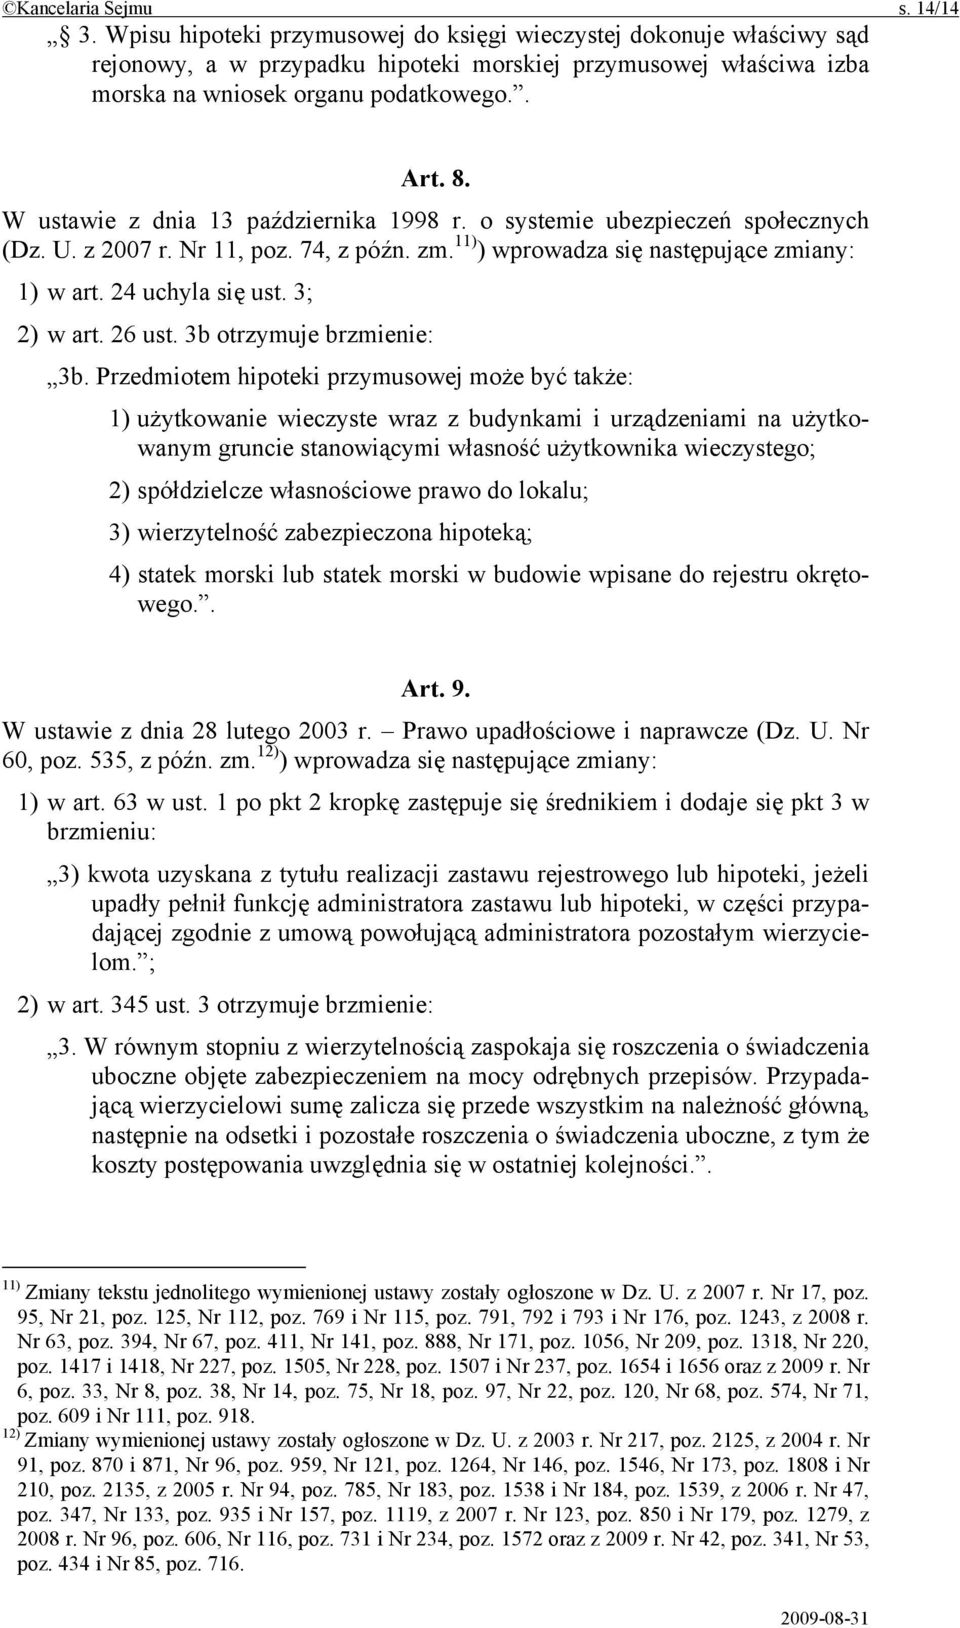 W ustawie z dnia 13 października 1998 r. o systemie ubezpieczeń społecznych (Dz. U. z 2007 r. Nr 11, poz. 74, z późn. zm. 11) ) wprowadza się następujące zmiany: 1) w art. 24 uchyla się ust.